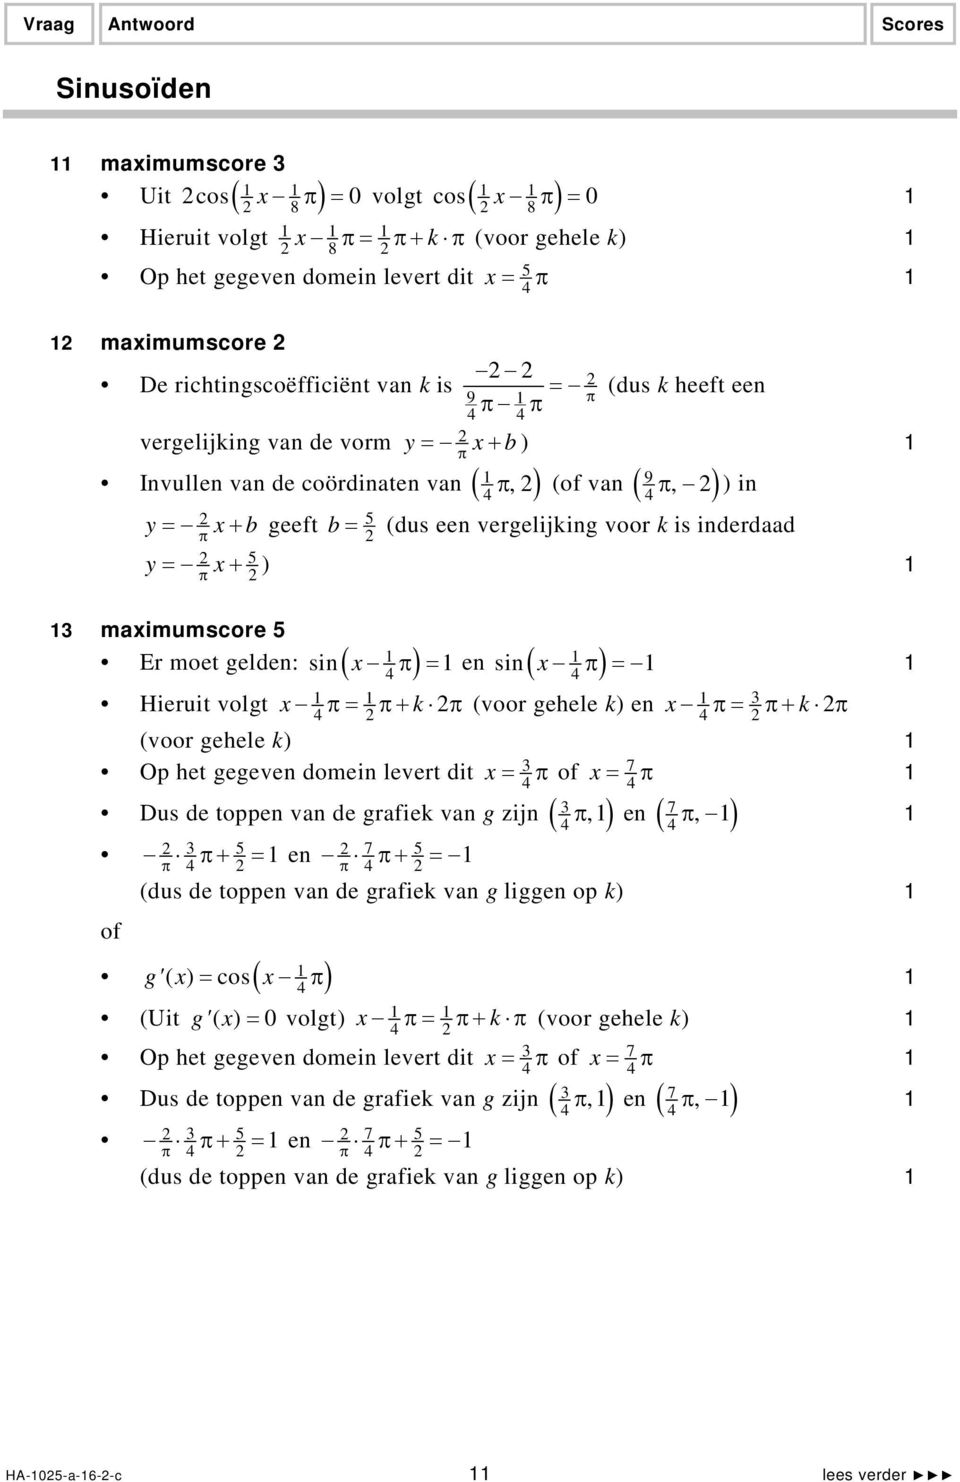 x+ ) maximumscore 5 Er moet gelden: sin ( x π ) = en ( ) sin x π = Hieruit volgt x π= π+ k π (voor gehele k) en x π= π+ k π (voor gehele k) Op het gegeven domein levert dit x = π x = 7 π Dus de